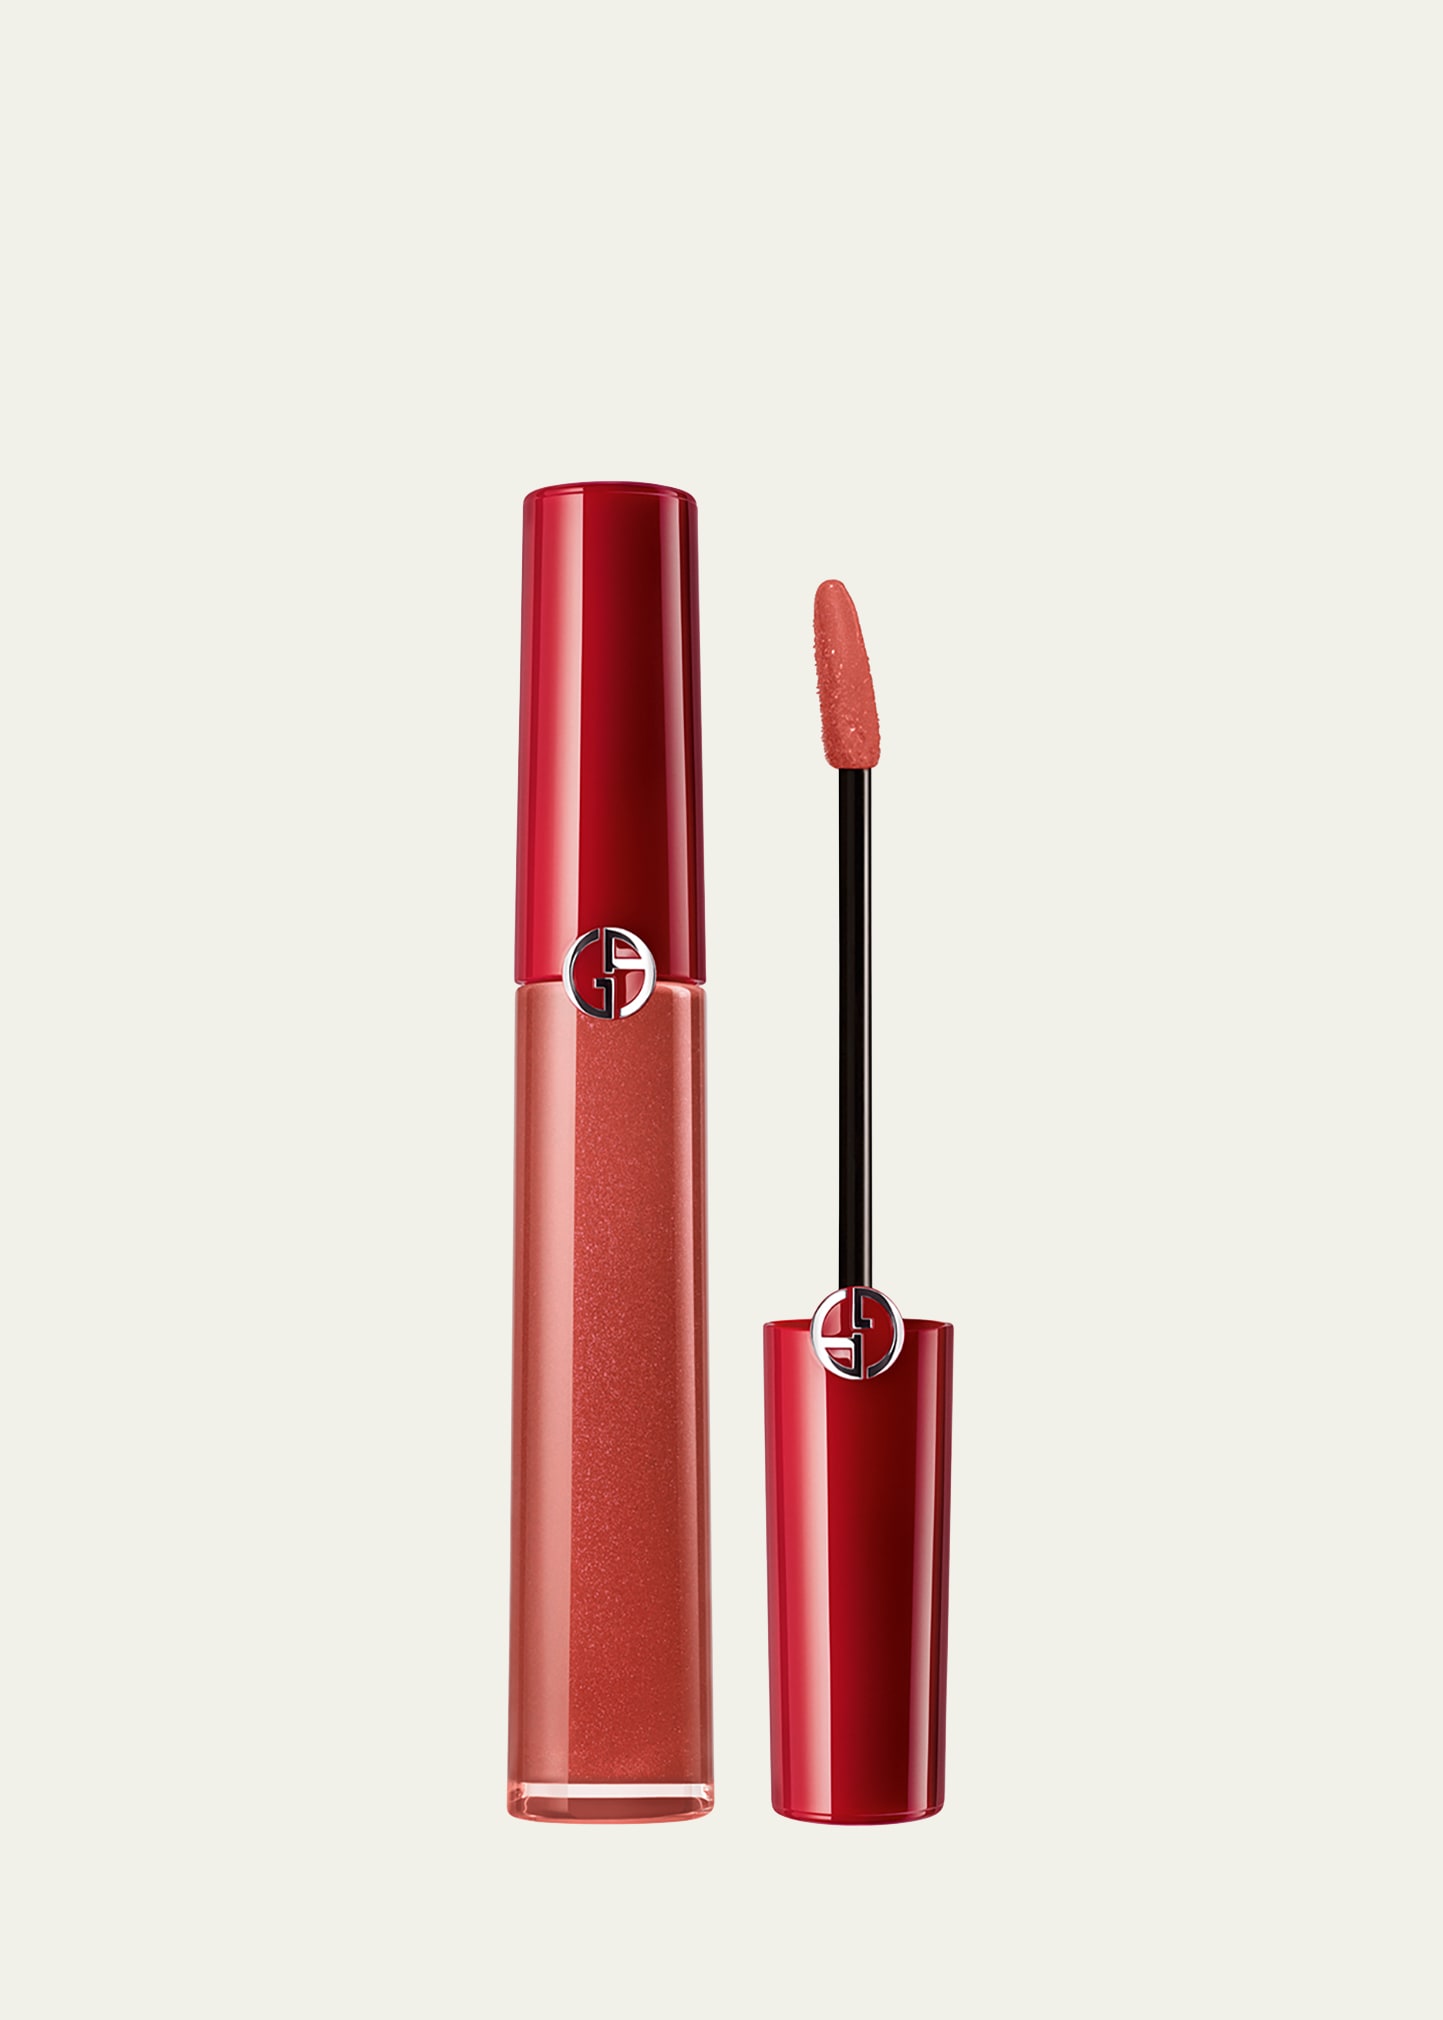 Armani Beauty Lip Maestro Liquid Lipstick In 215 Sun